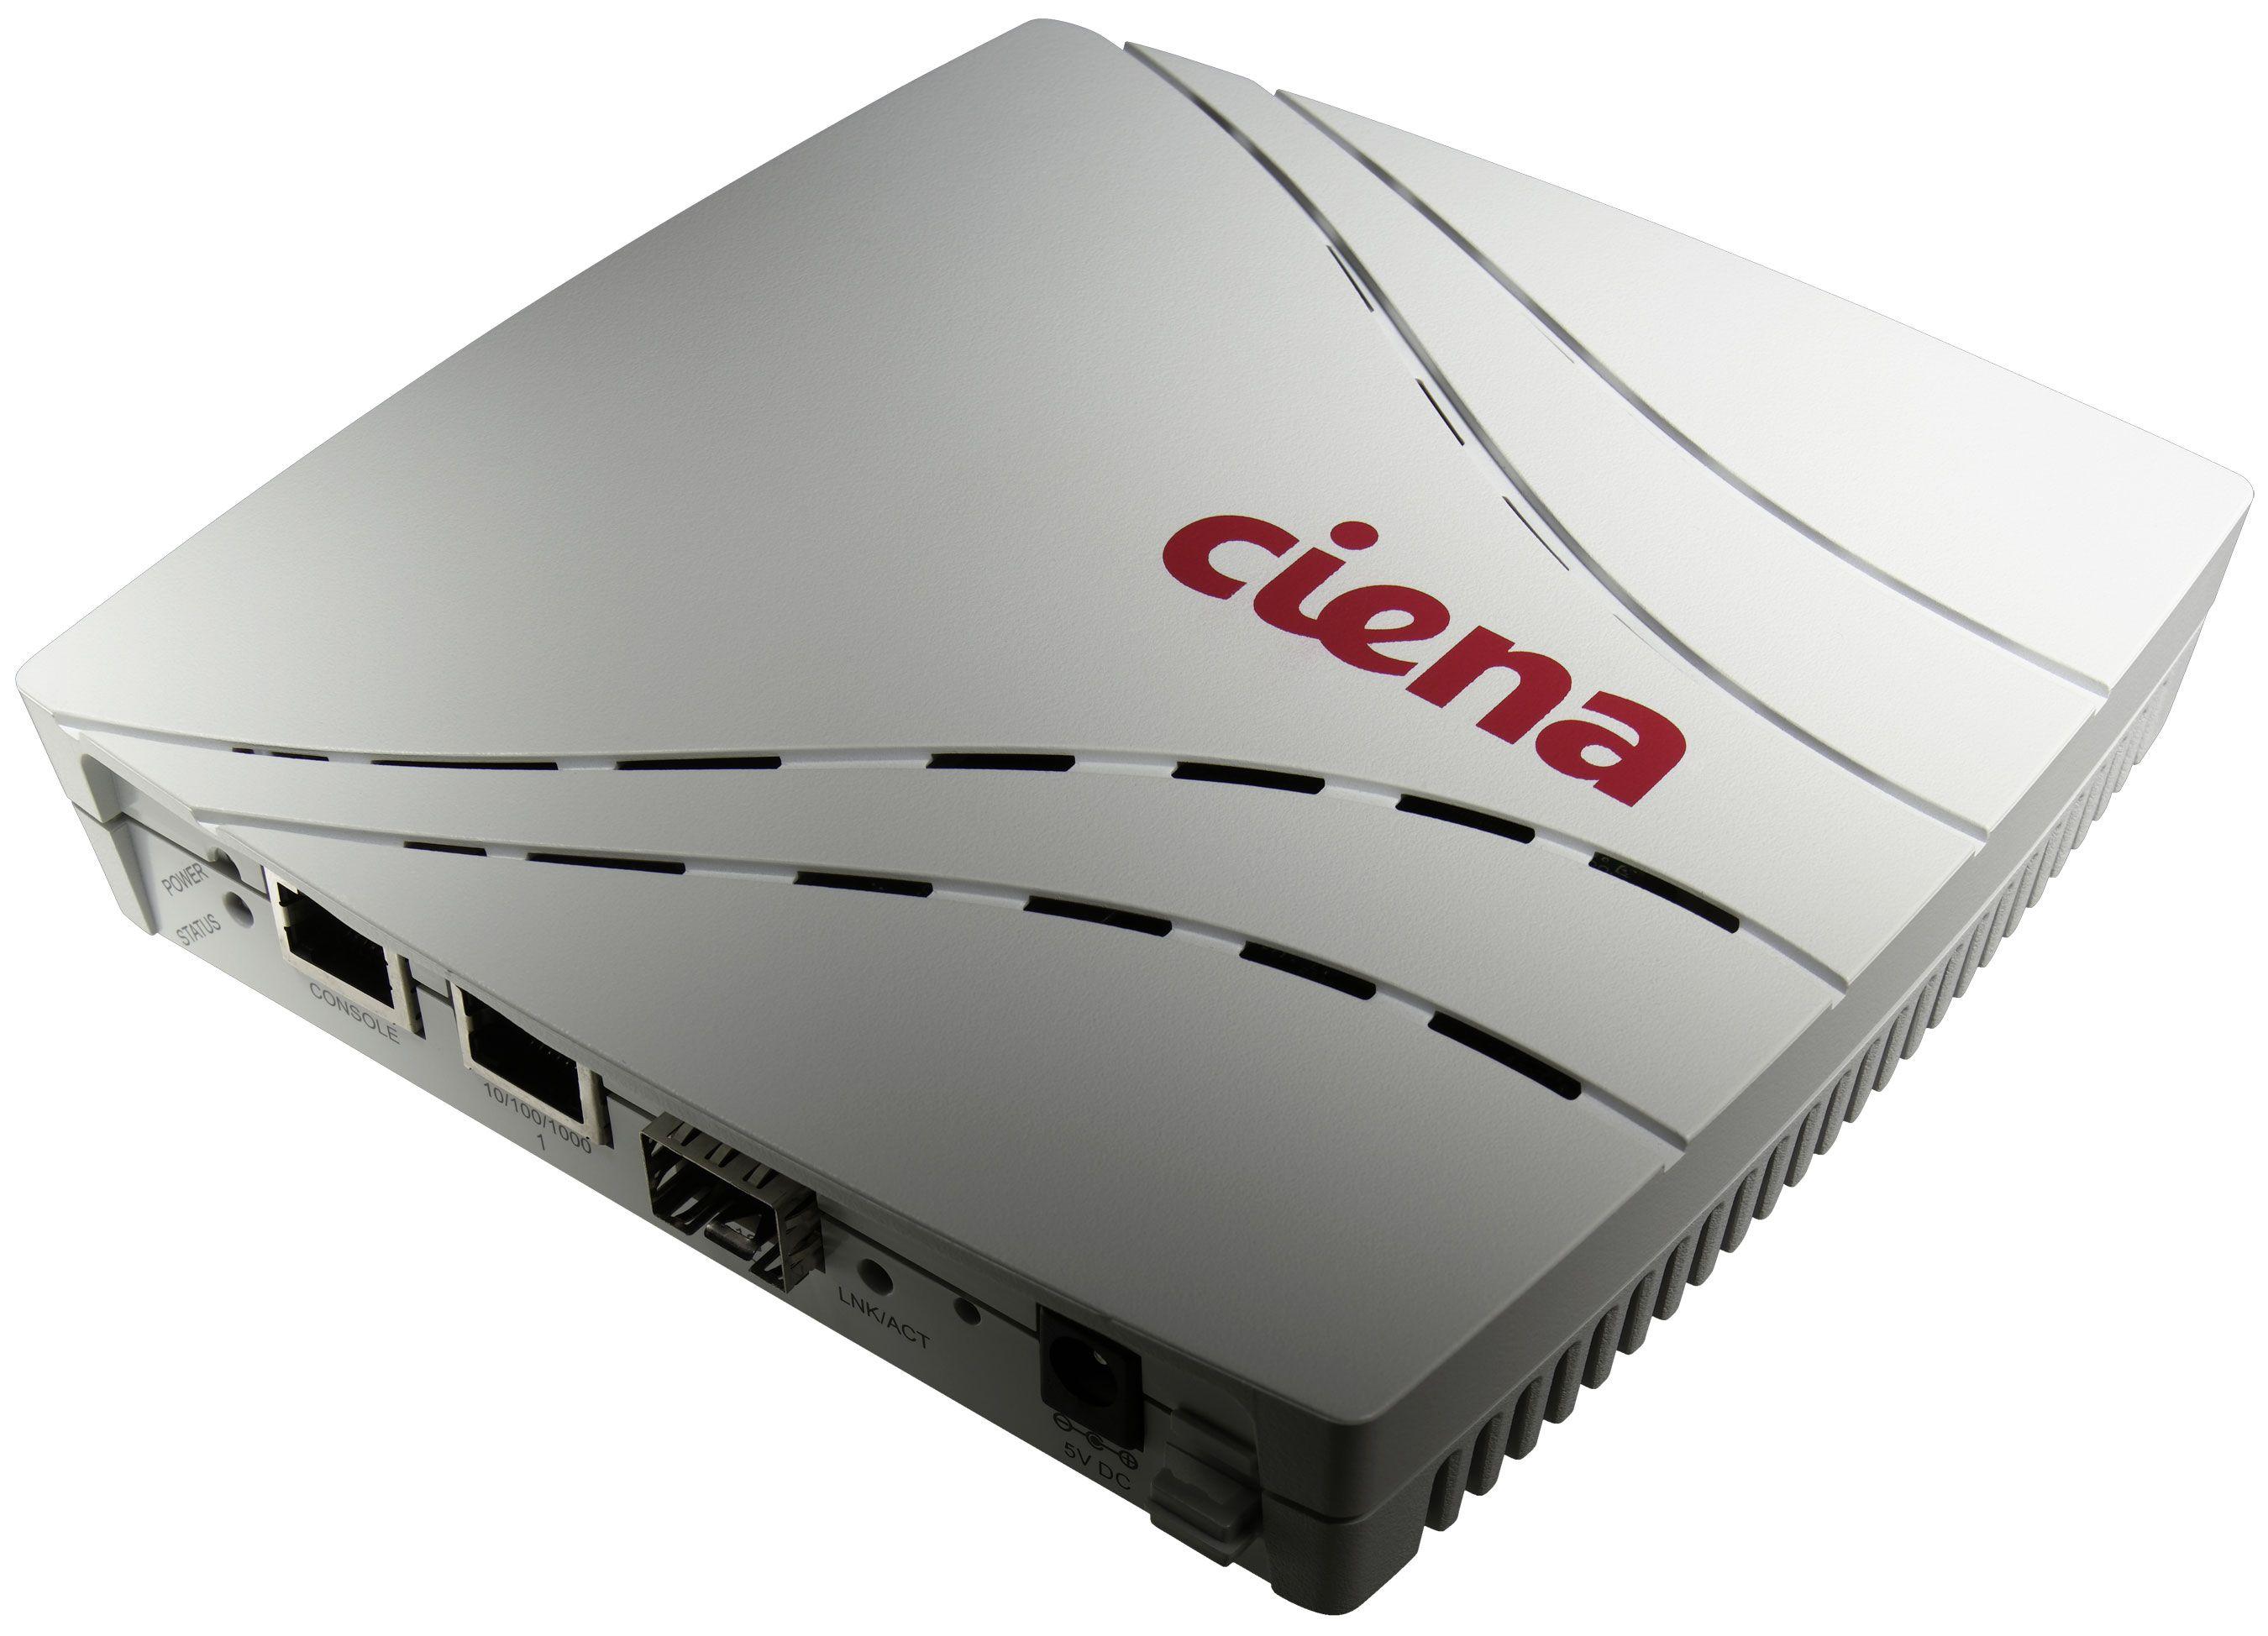 Ciena Logo - Newsroom. Optical Transport Networks & More